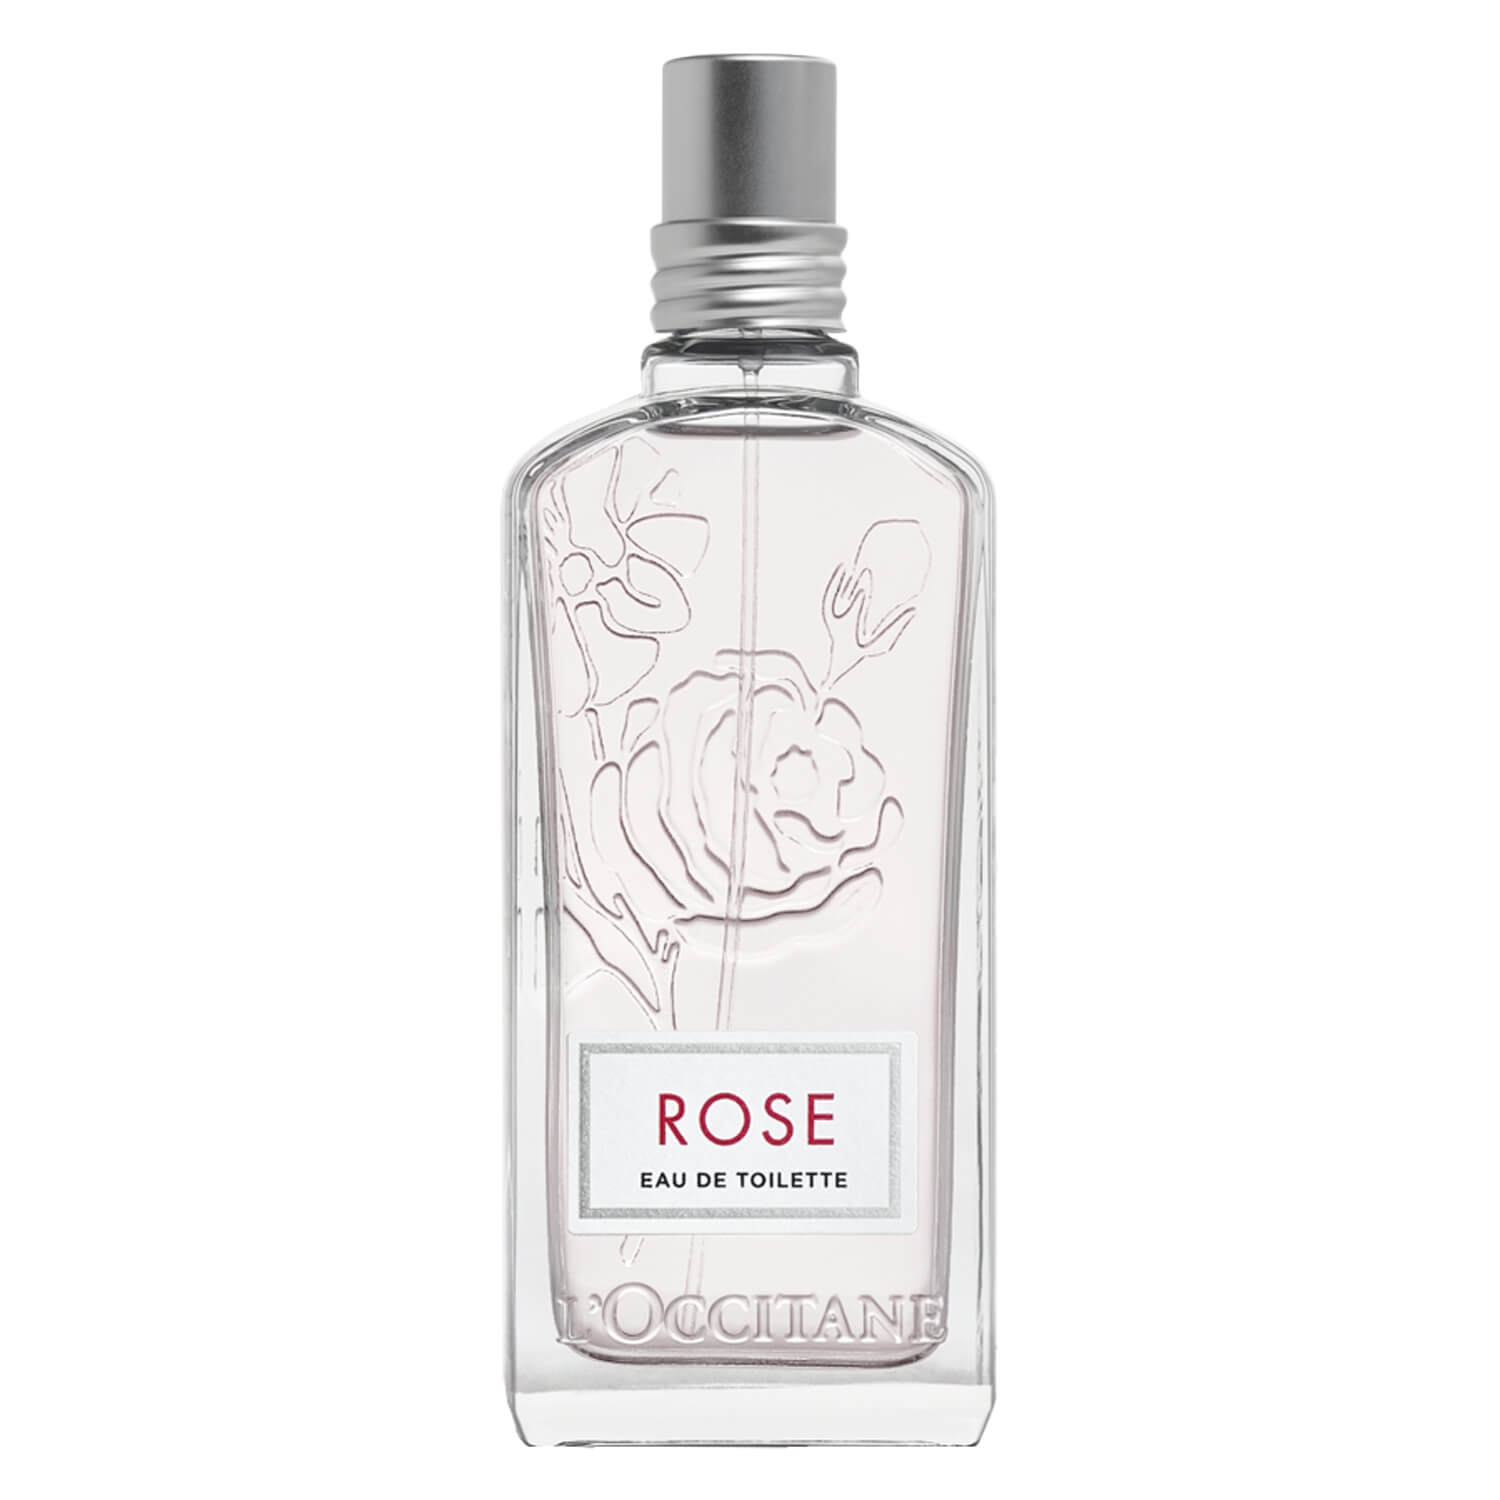 Produktbild von L'Occitane Fragrance - Rose Eau de Toilette